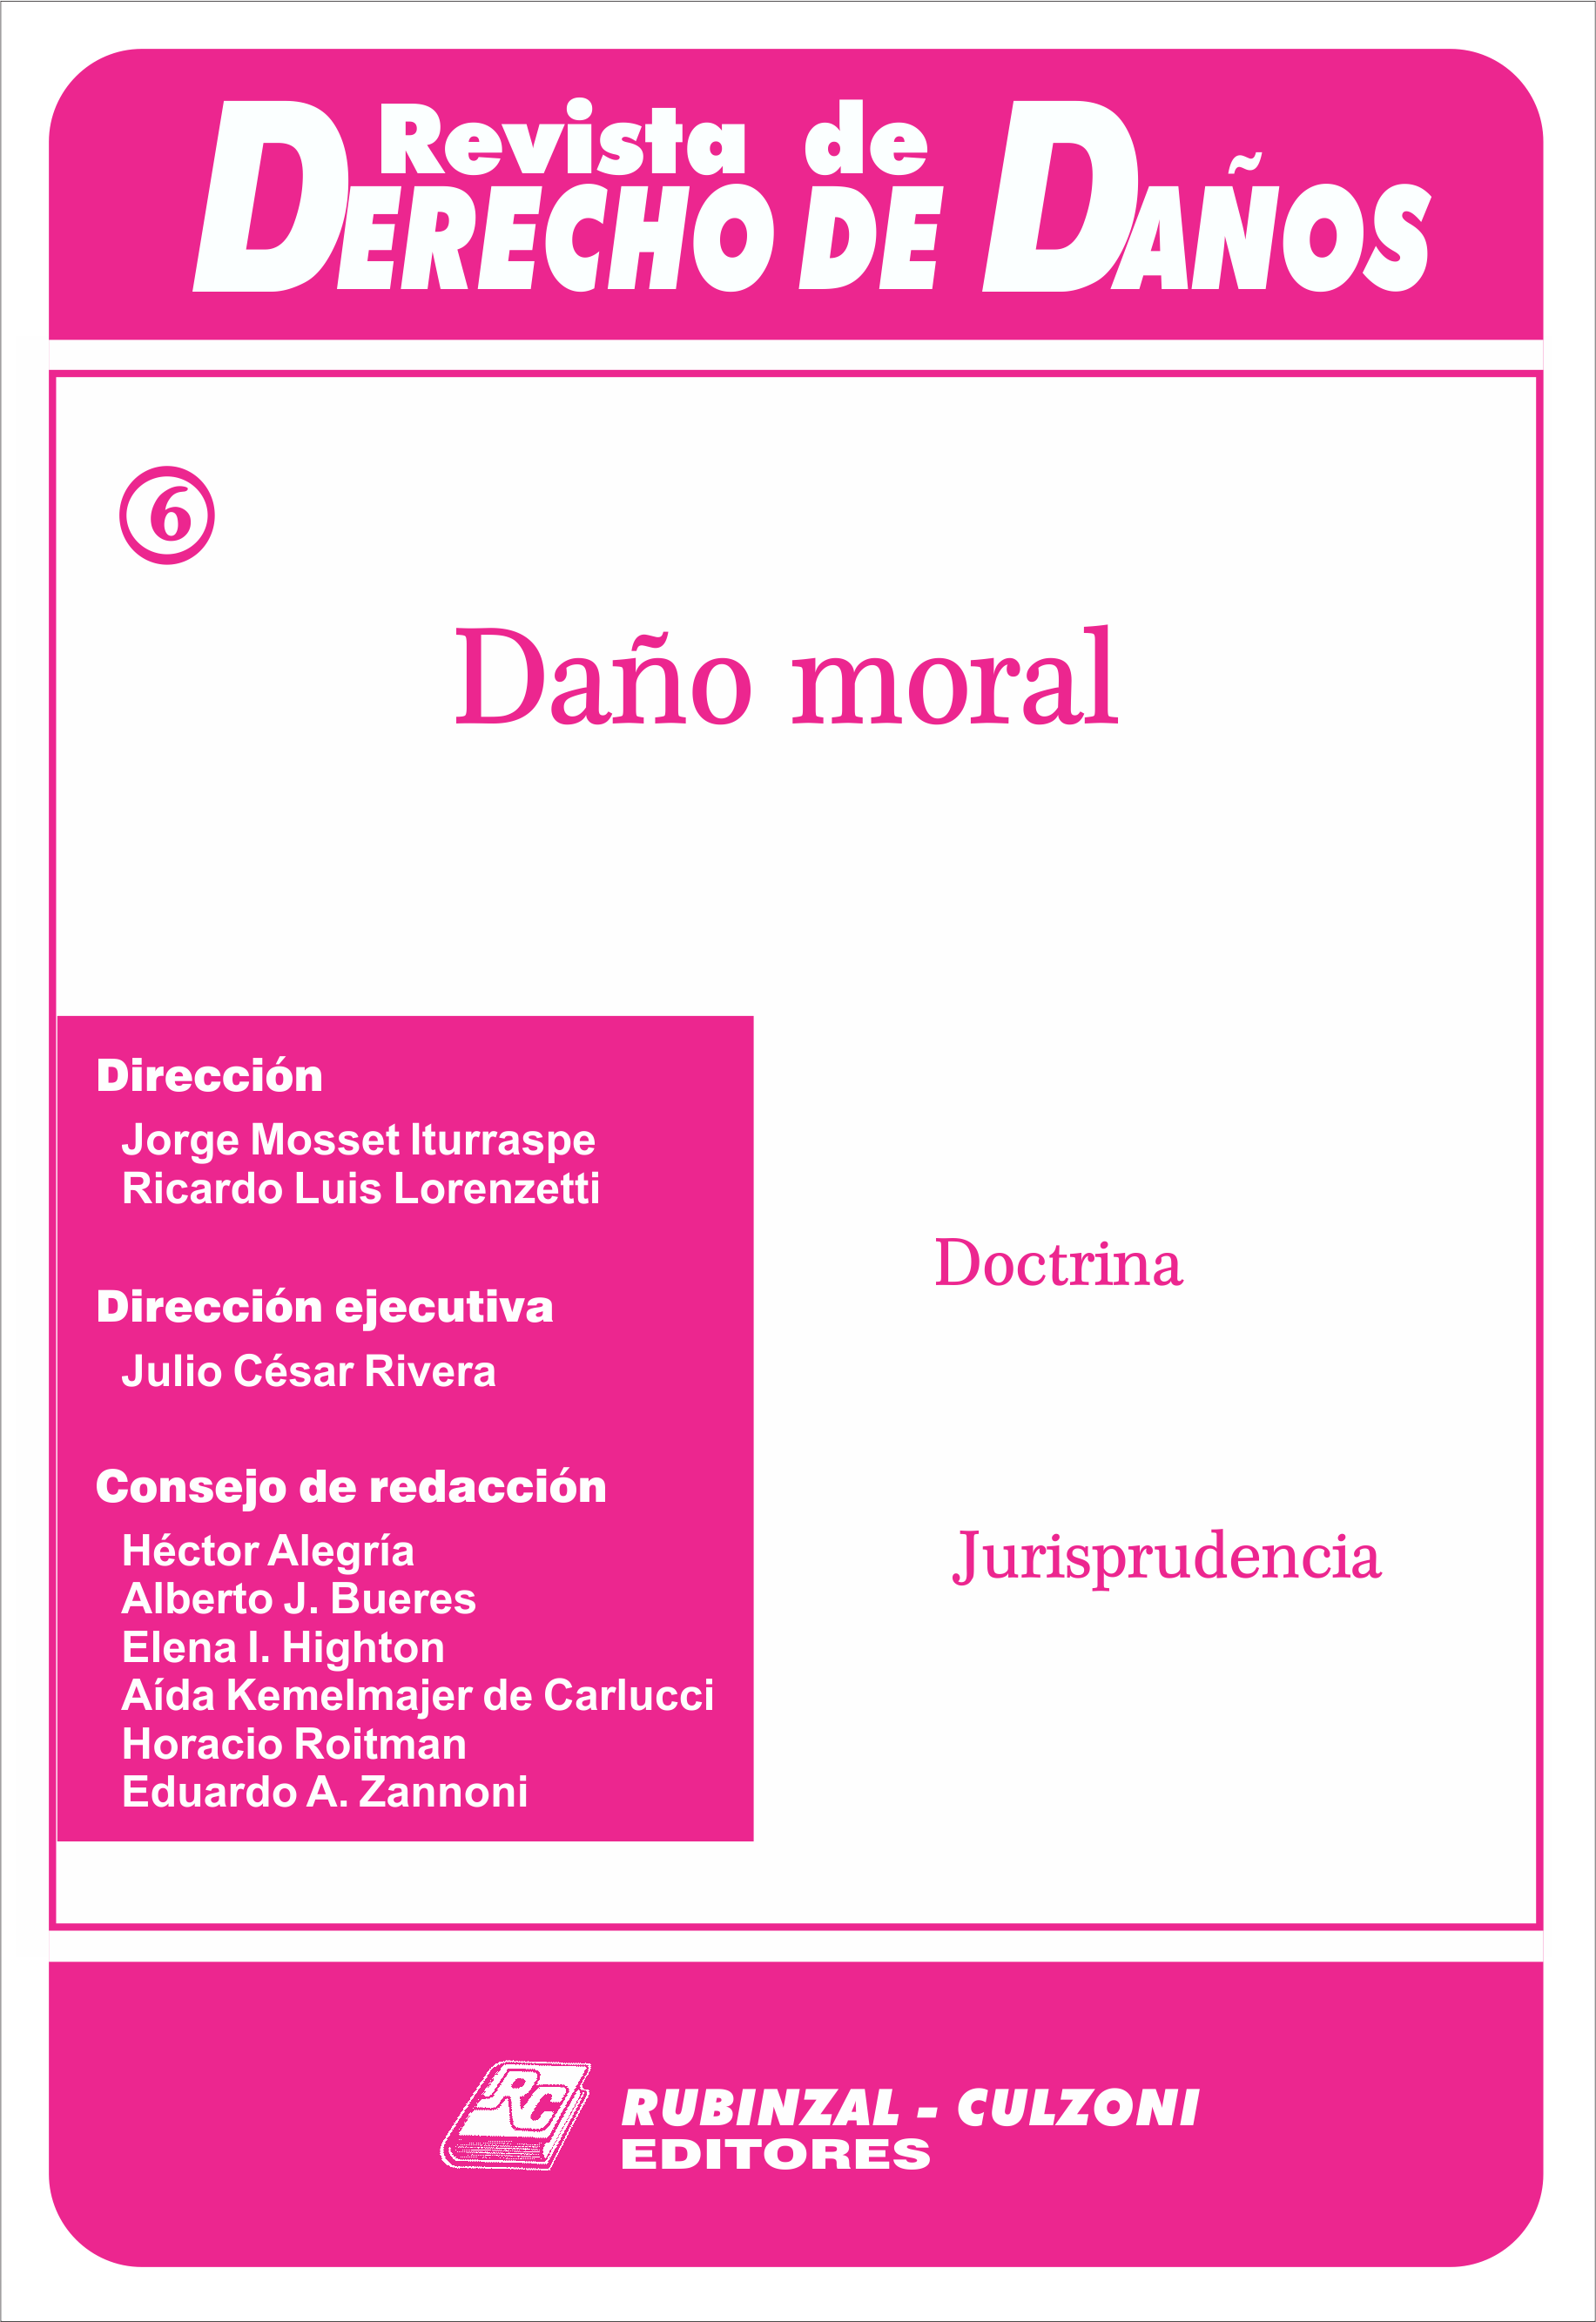 Revista de Derecho de Daños - Daño moral.